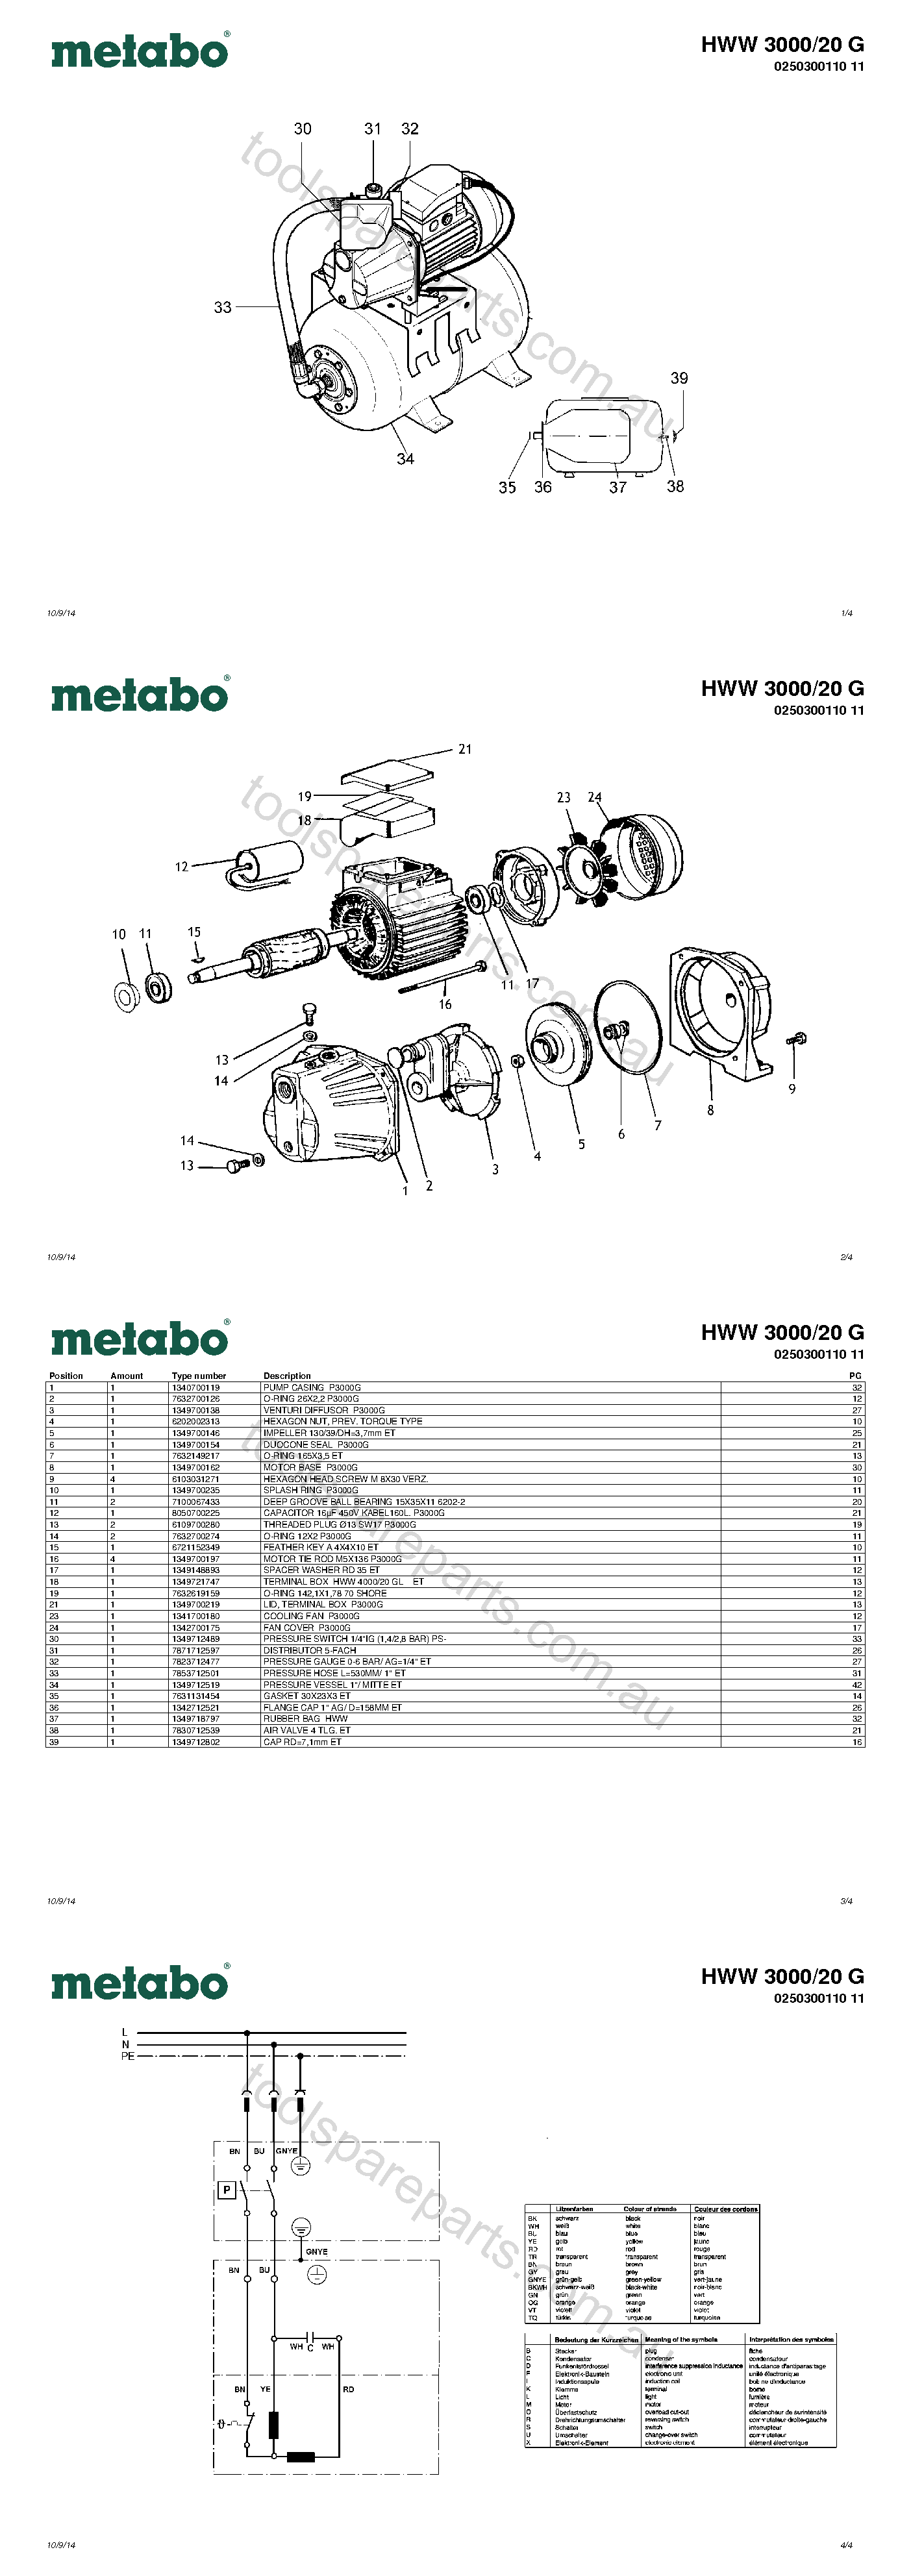 Metabo HWW 3000/20 G 0250300110 11  Diagram 1